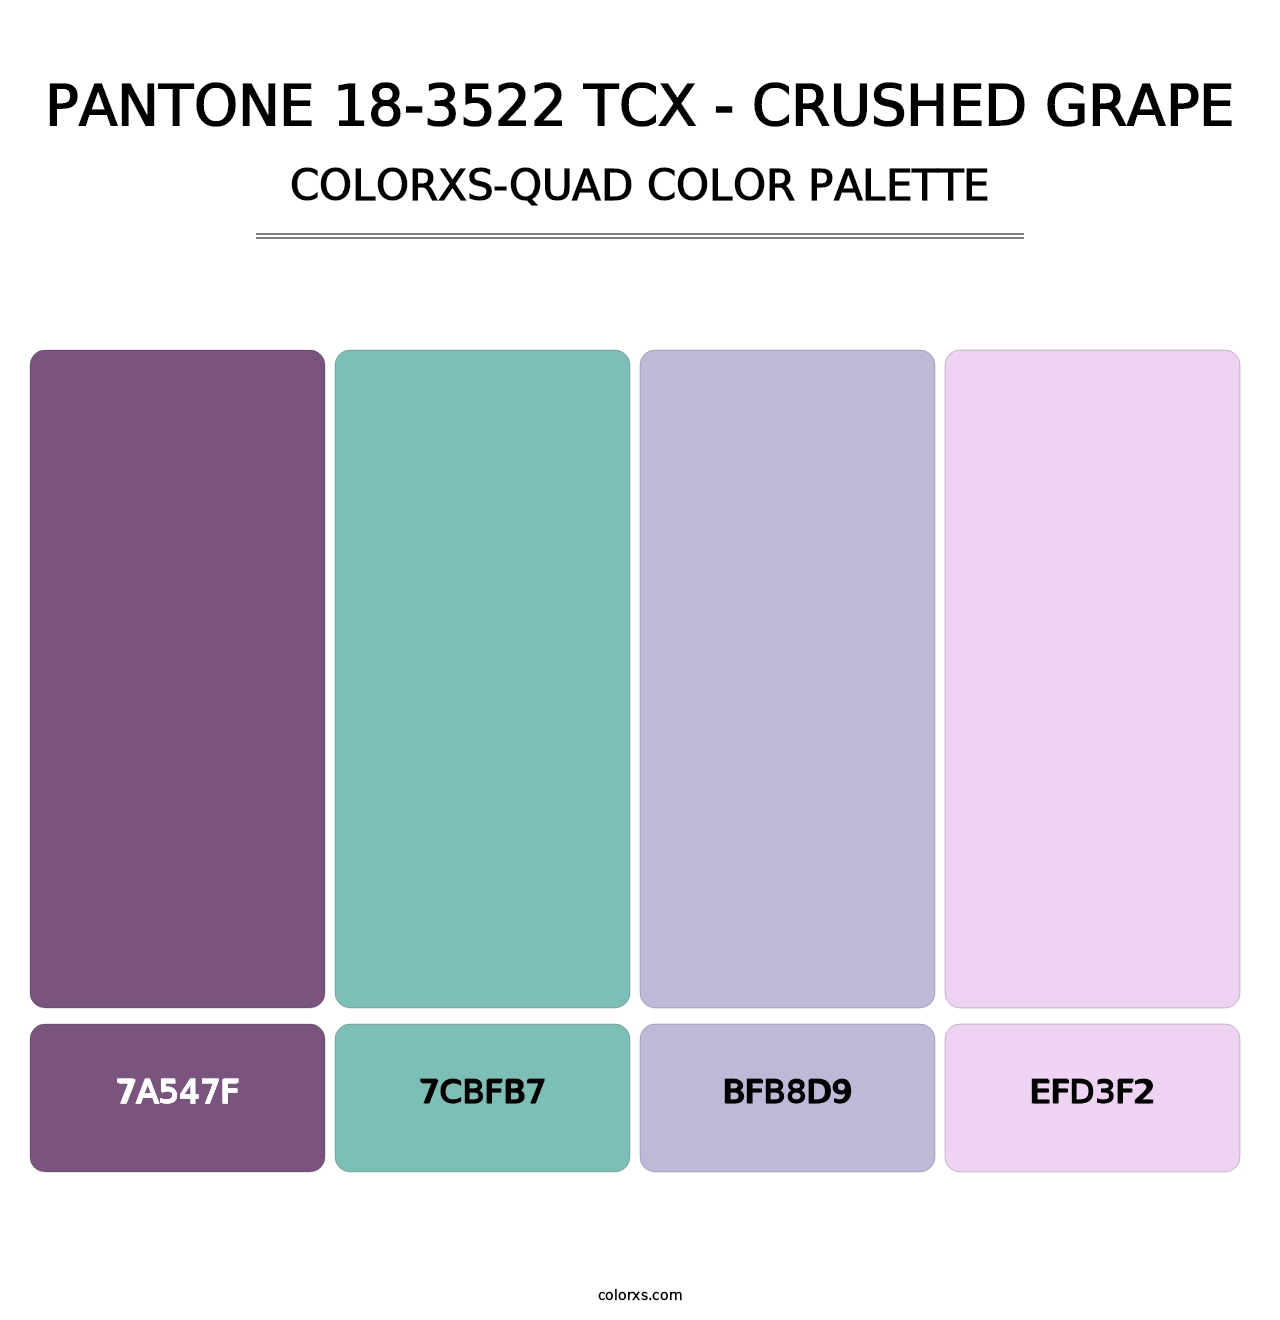 PANTONE 18-3522 TCX - Crushed Grape - Colorxs Quad Palette